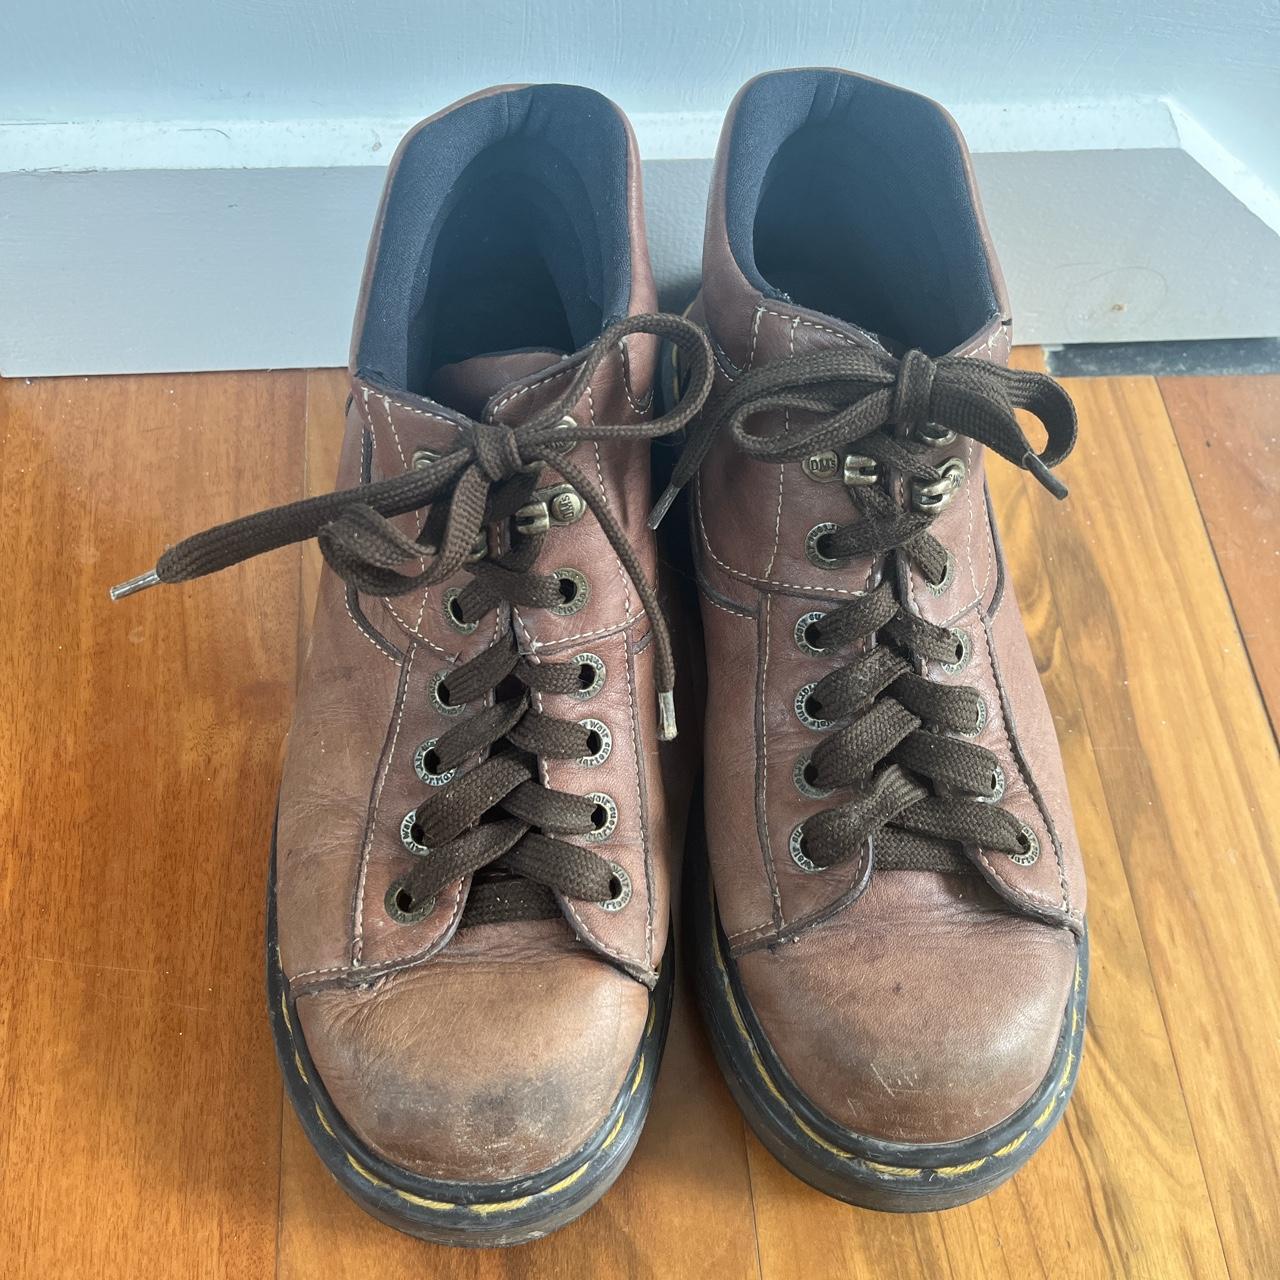 vintage platform brown doc marten boots size UK 6.... - Depop